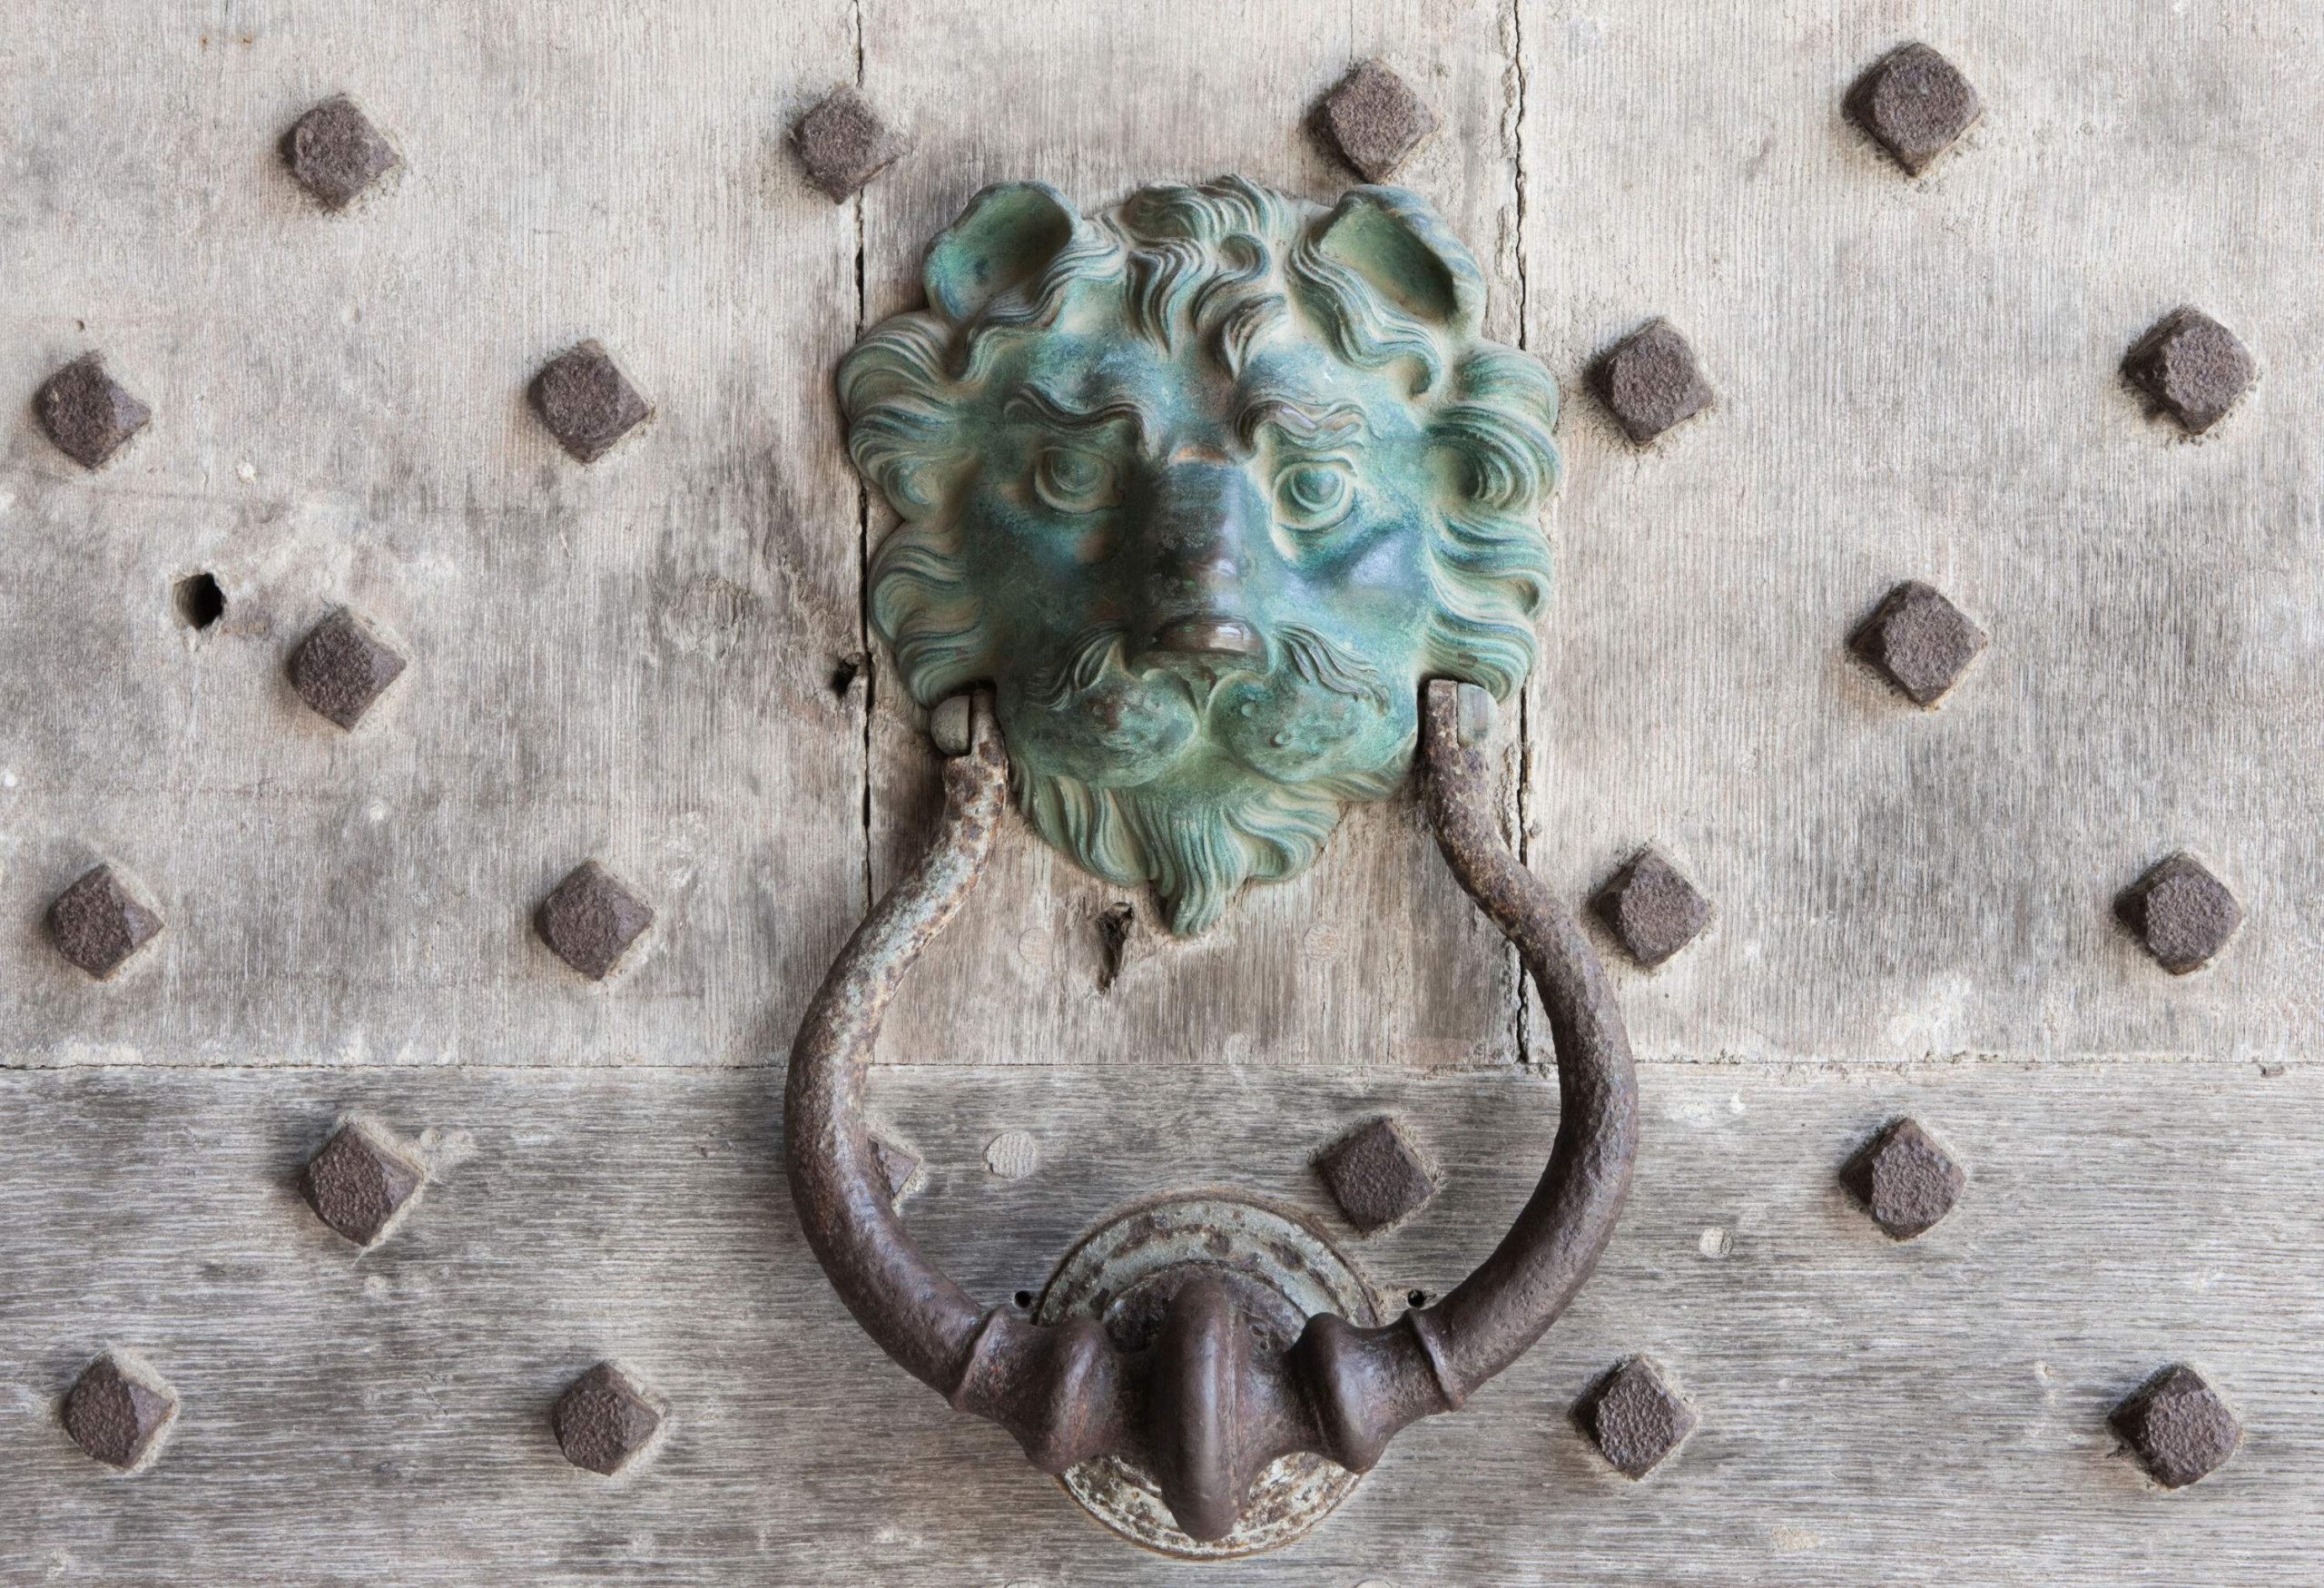 A cast-iron lion's head door knocker affixed to a hardwood door.